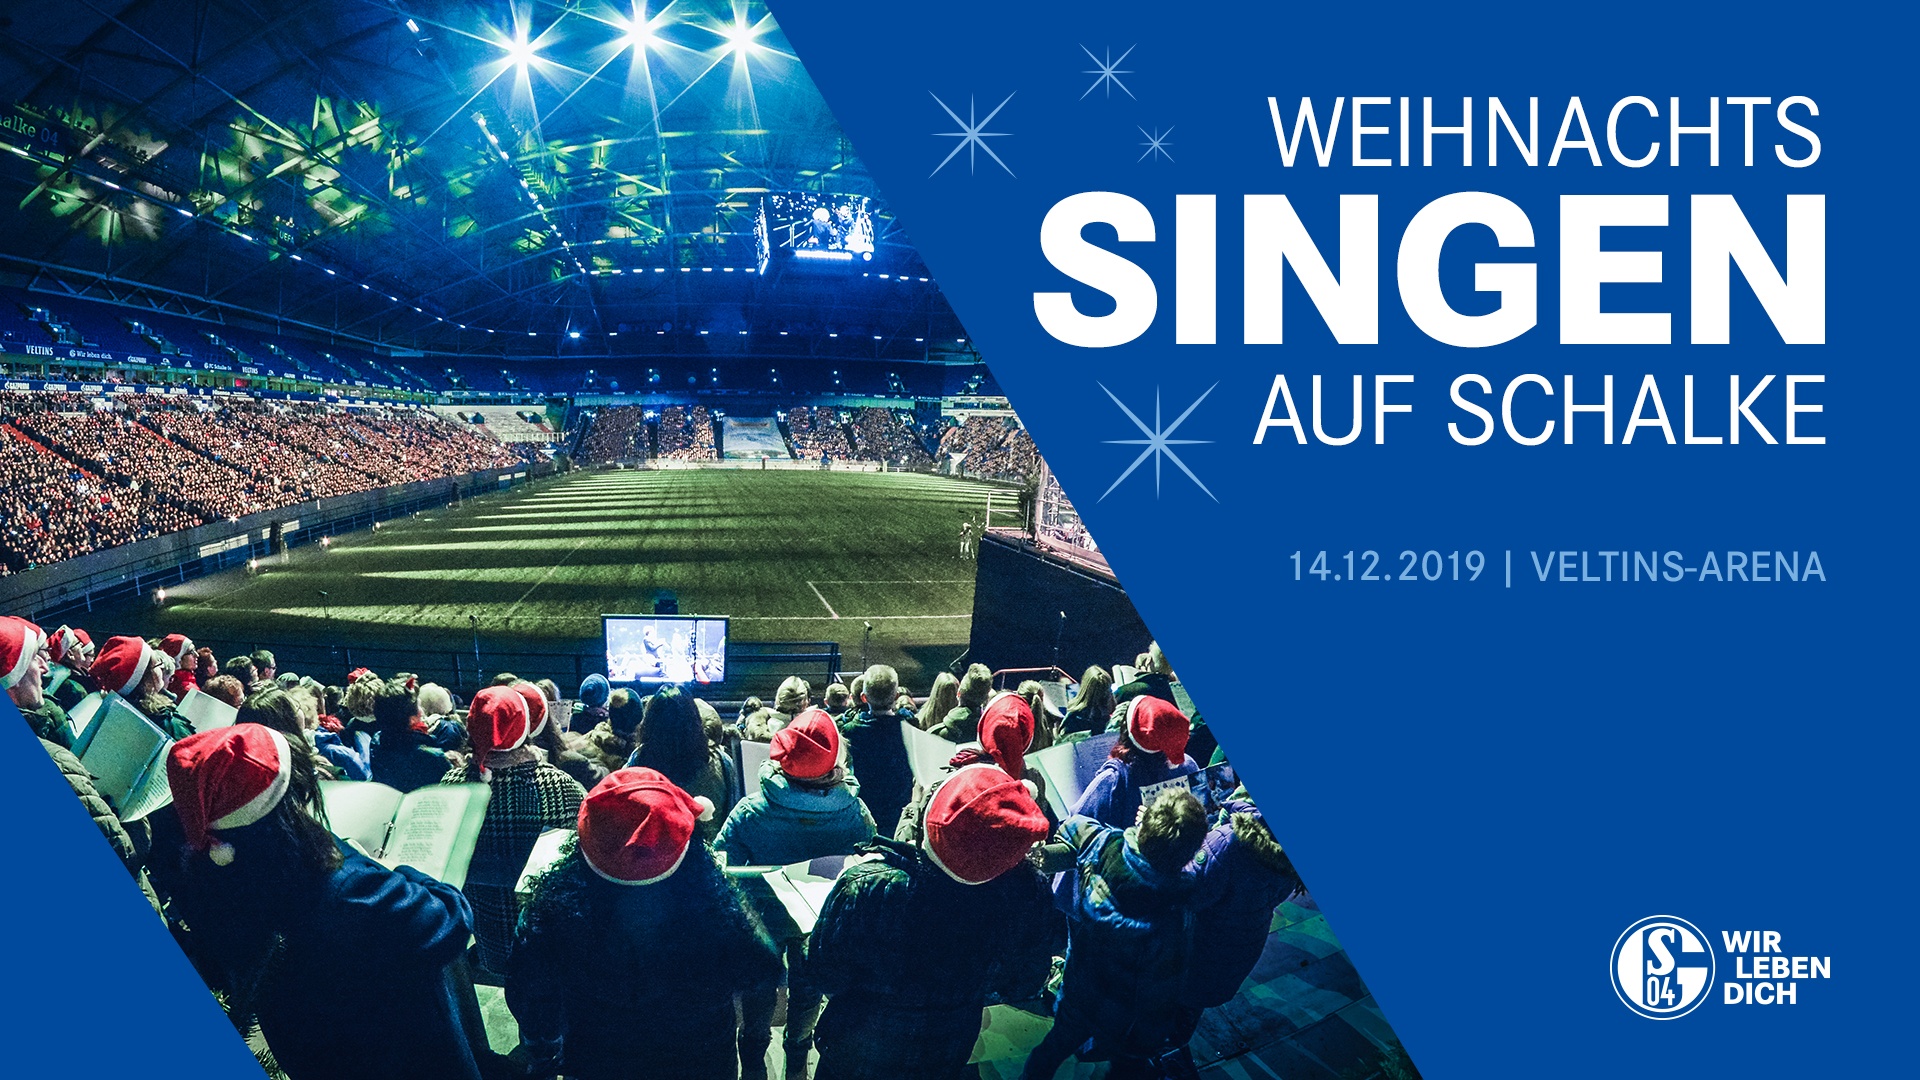 Weihnachtssingen auf Schalke 2019